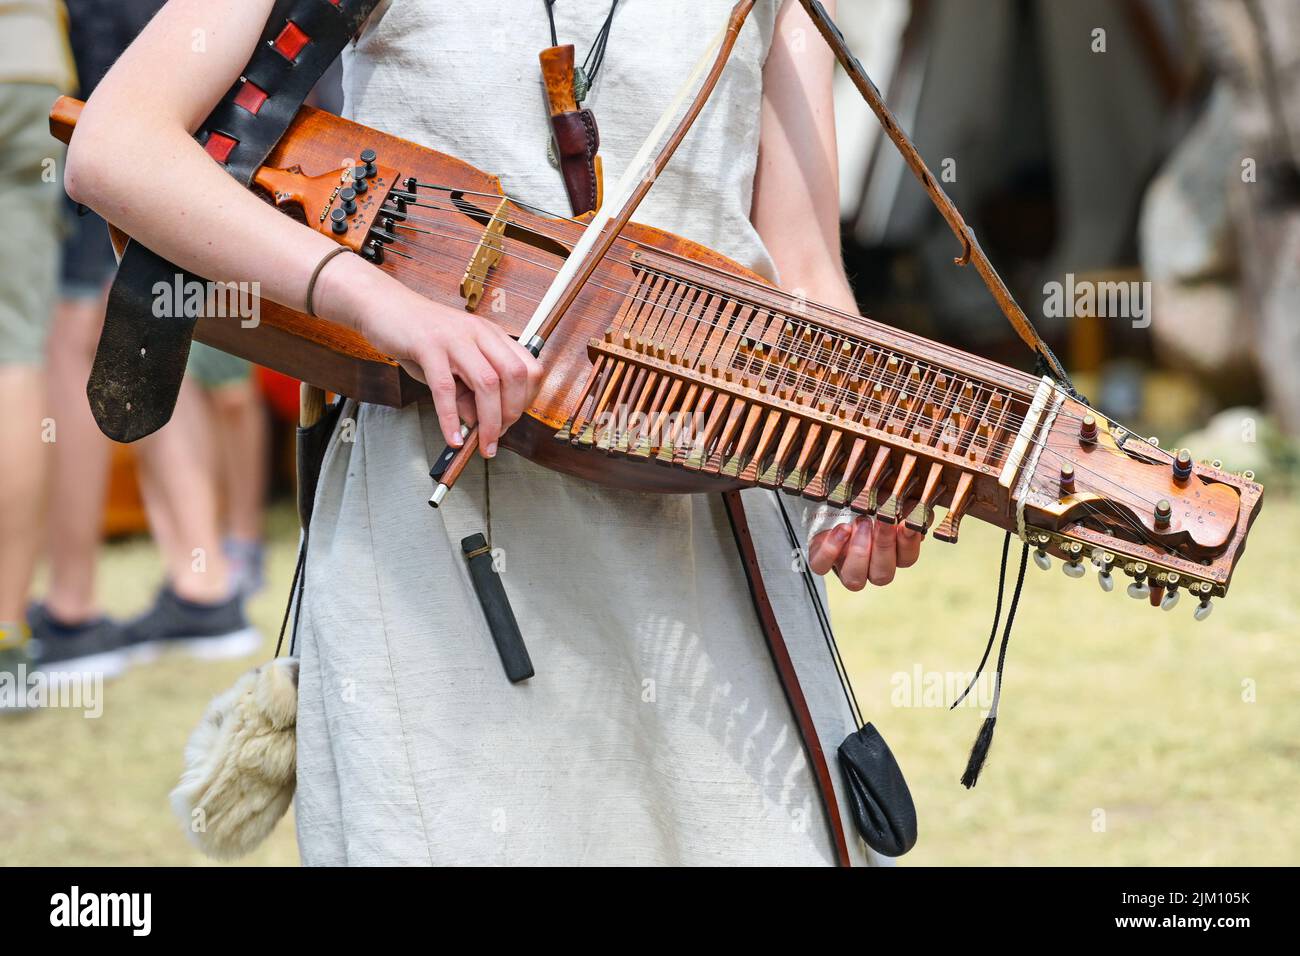 Nyckelharpa, dle a chiavi, un tradizionale strumento musicale svedese, strumento ad archi o chordophone suonato da una giovane donna in occasione di una festa medievale; Foto Stock